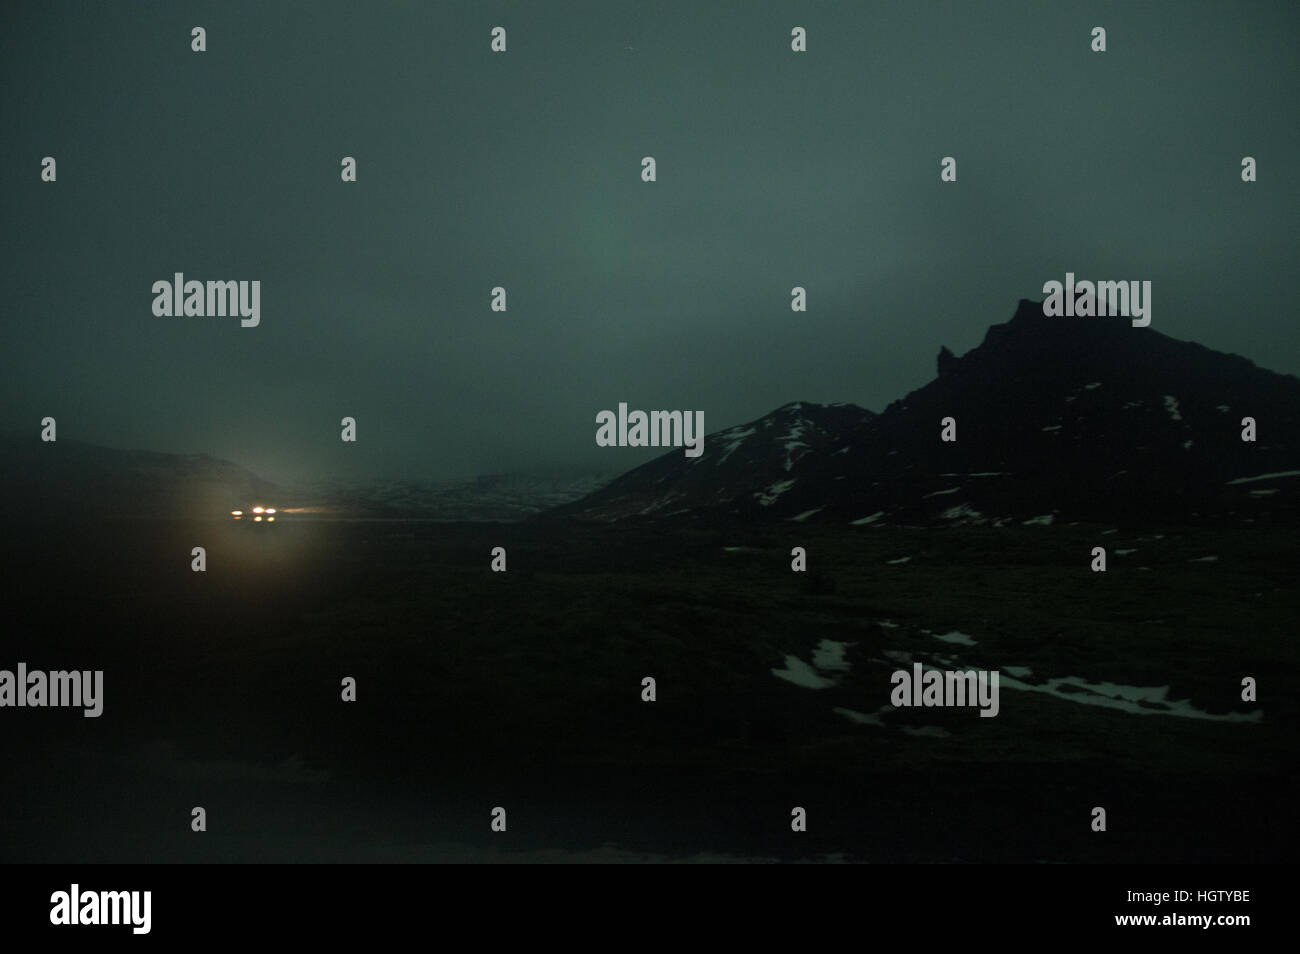 Le luci visto attraverso un inquietante bagliore verde nelle lingue islandese highlands di notte Foto Stock